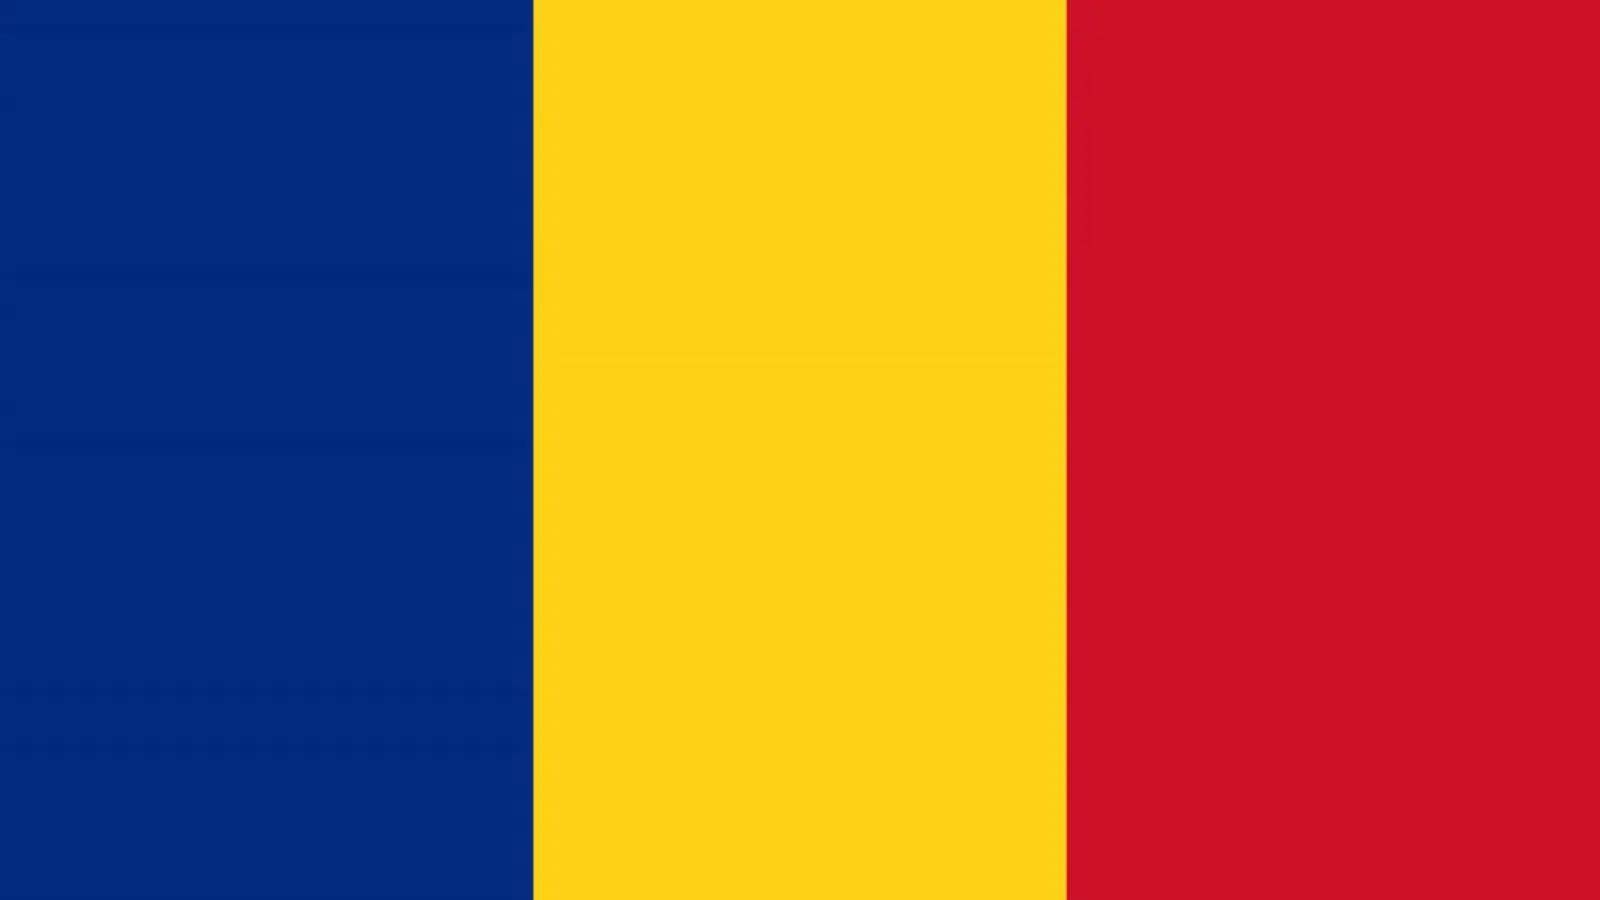 CUTREMUR Romania Anuntul ULTIMA ORA INFP Romani